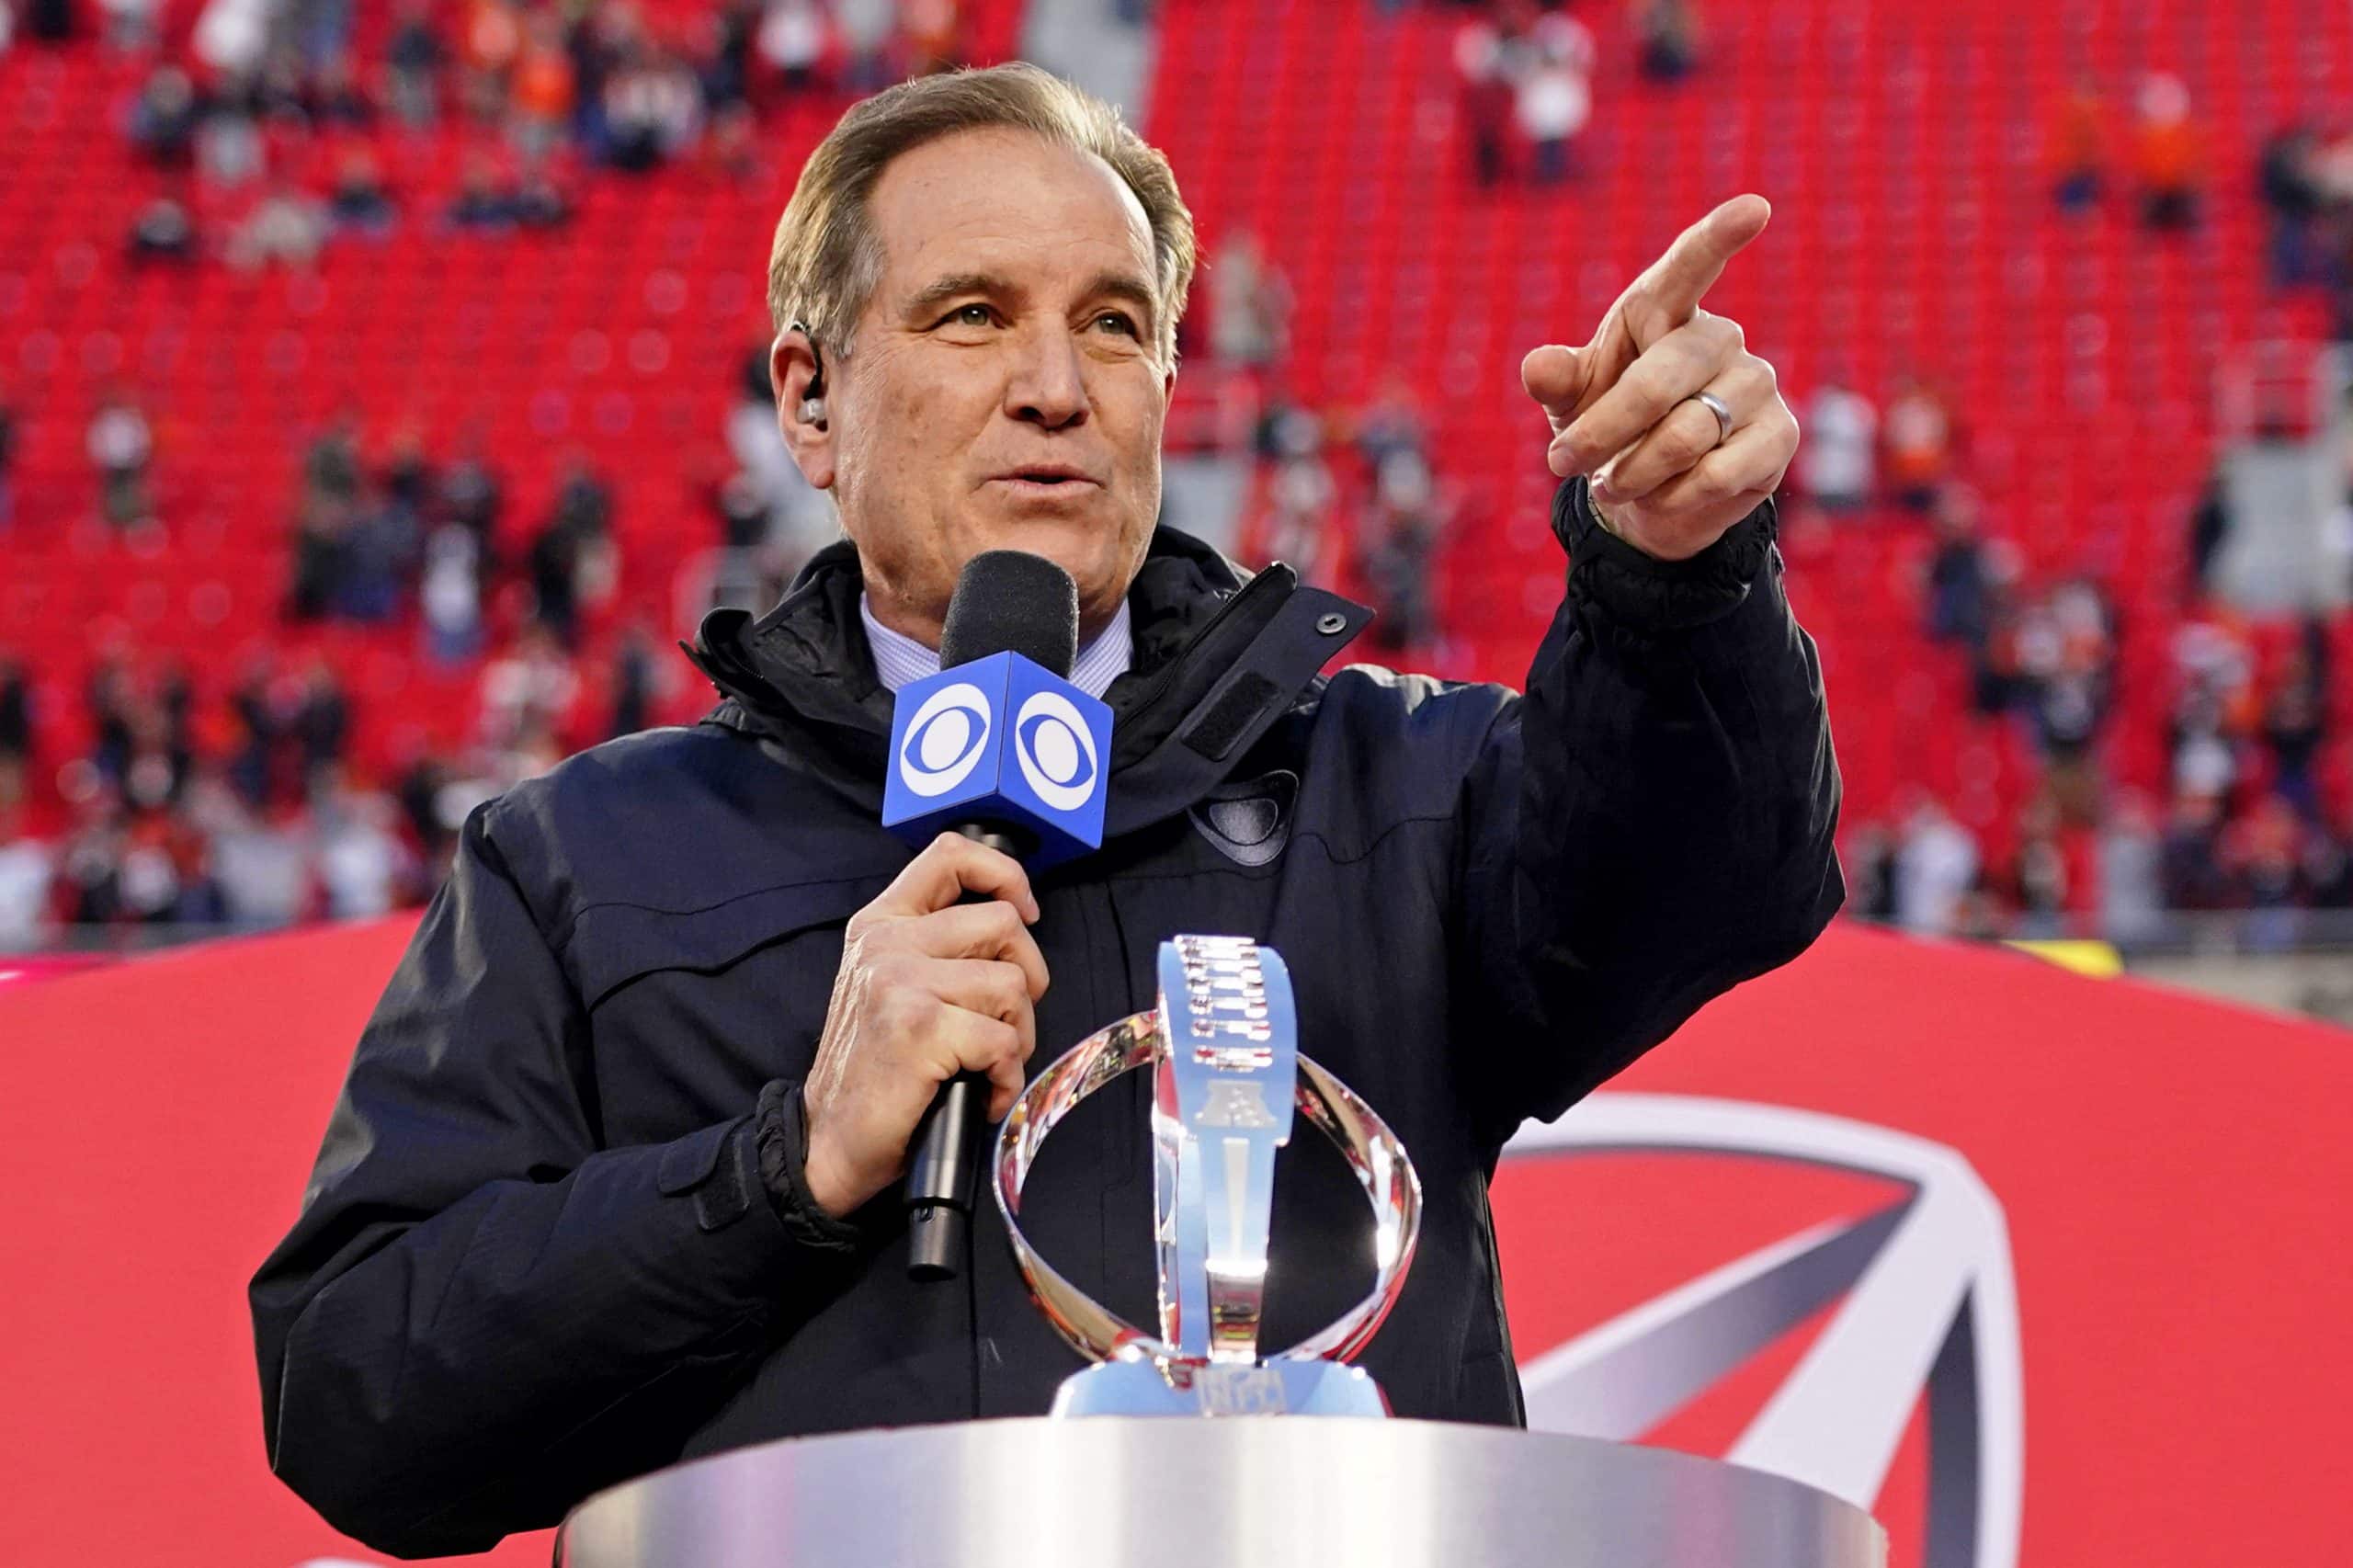 CBS Announces NFL Broadcast Teams for 2023 Season